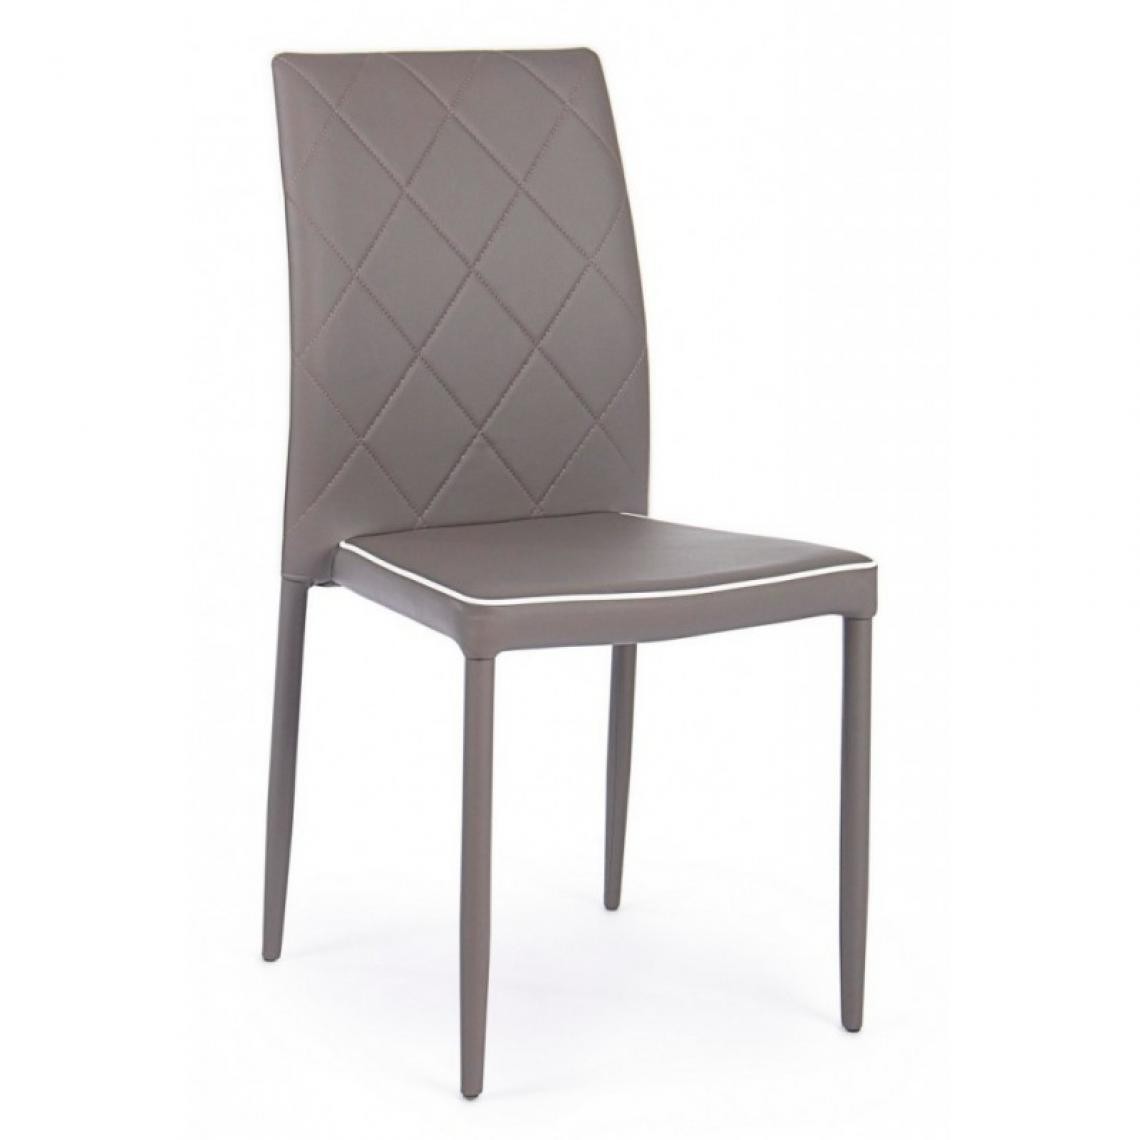 Webmarketpoint - Chaise de boue pour le salon avec structure en acier - Chaises